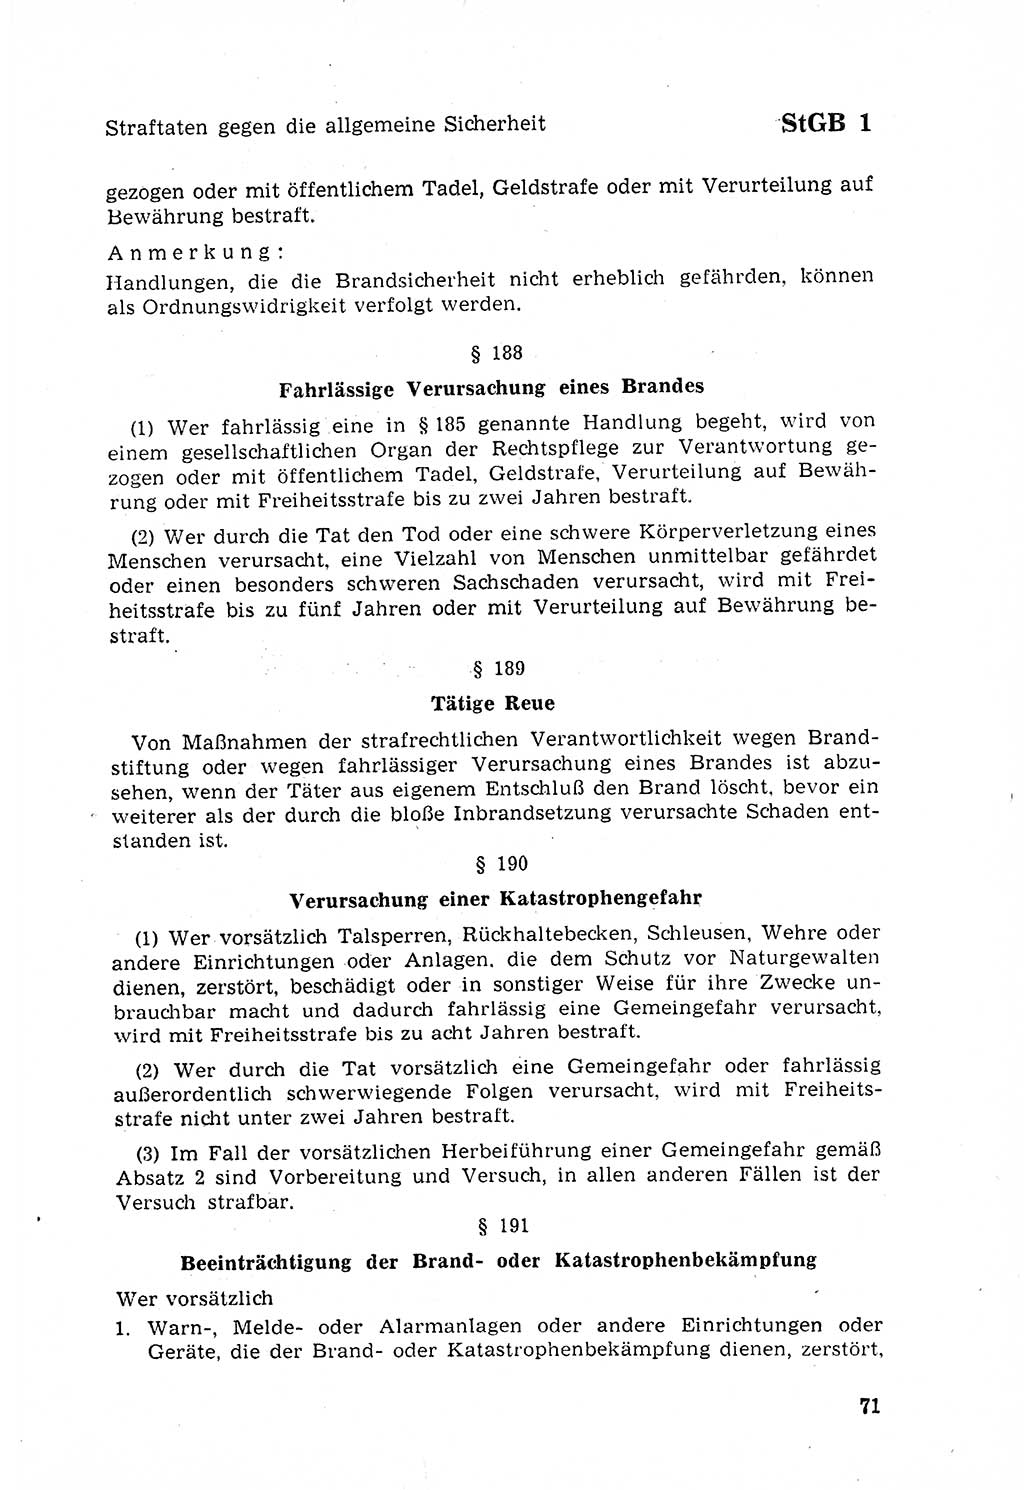 Strafgesetzbuch (StGB) der Deutschen Demokratischen Republik (DDR) 1968, Seite 71 (StGB DDR 1968, S. 71)